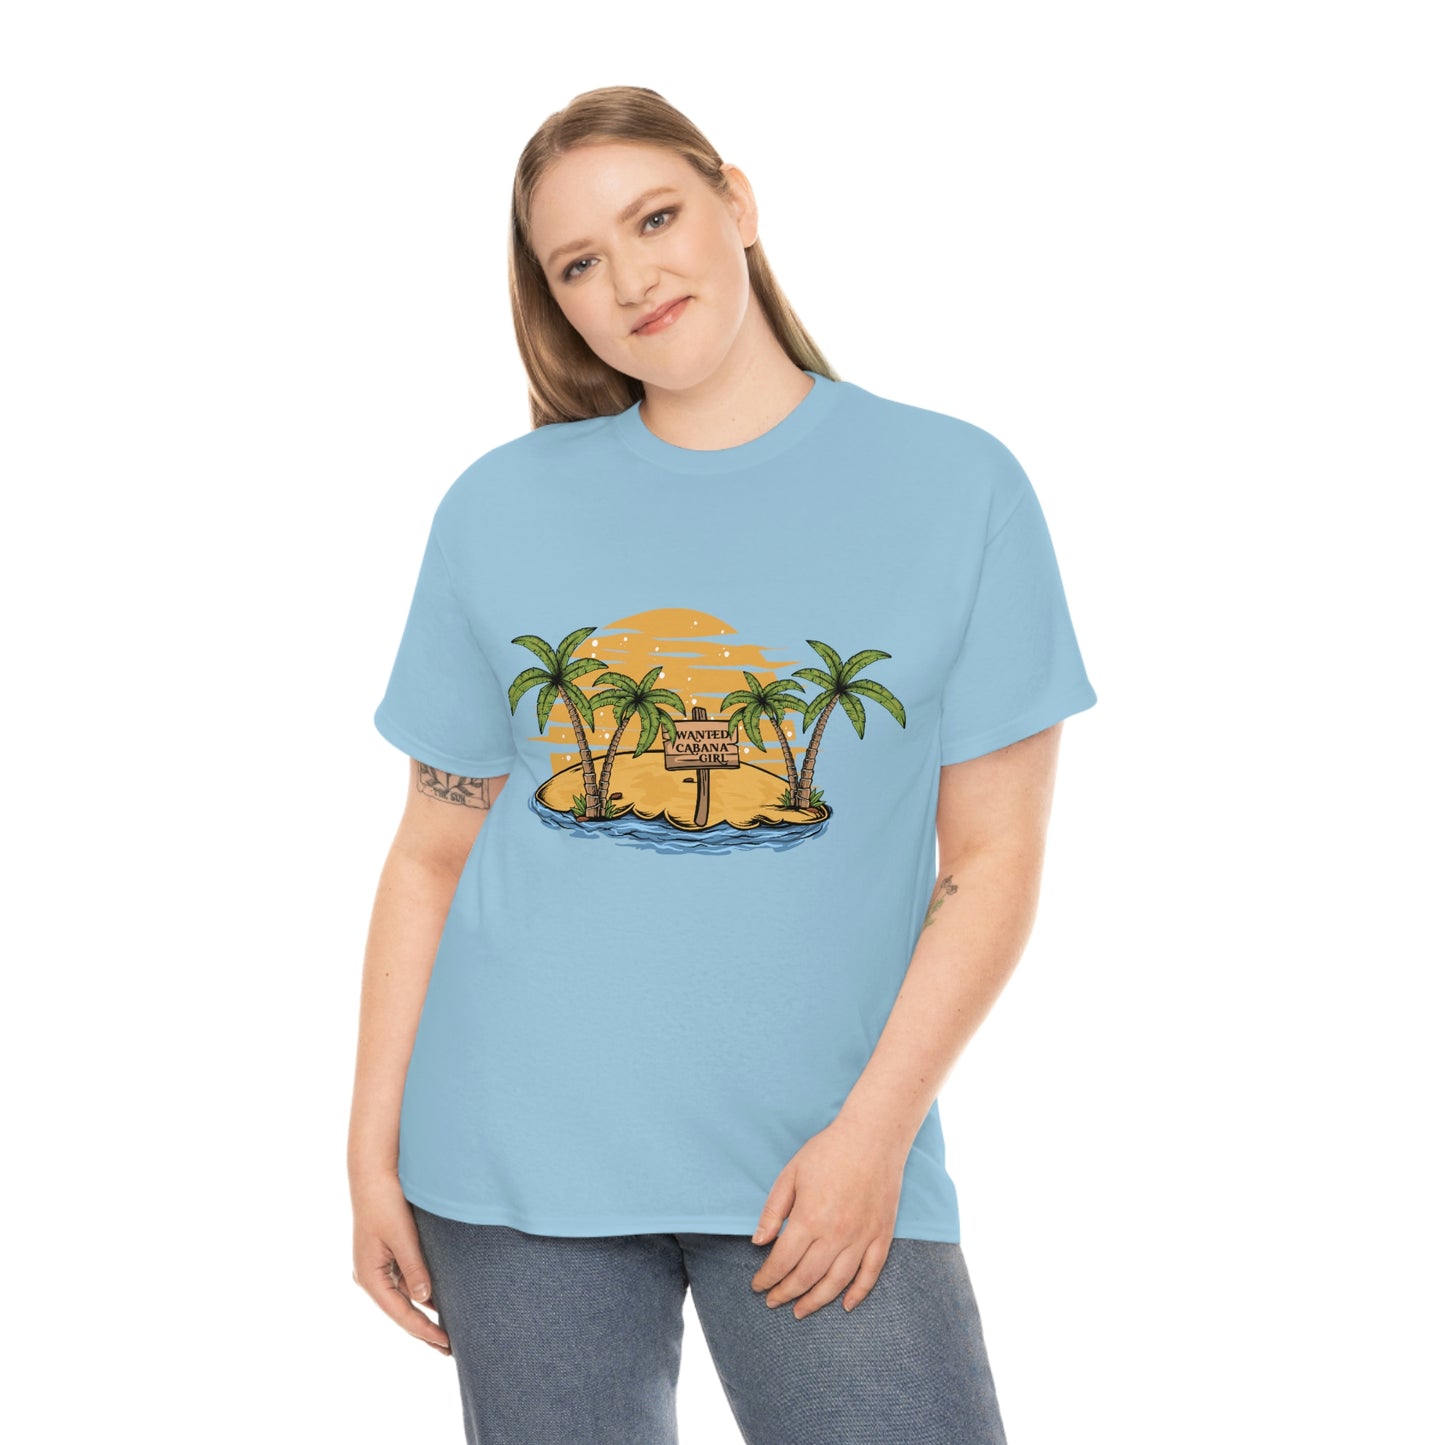 Wanted: Cabana Girl T-shirt